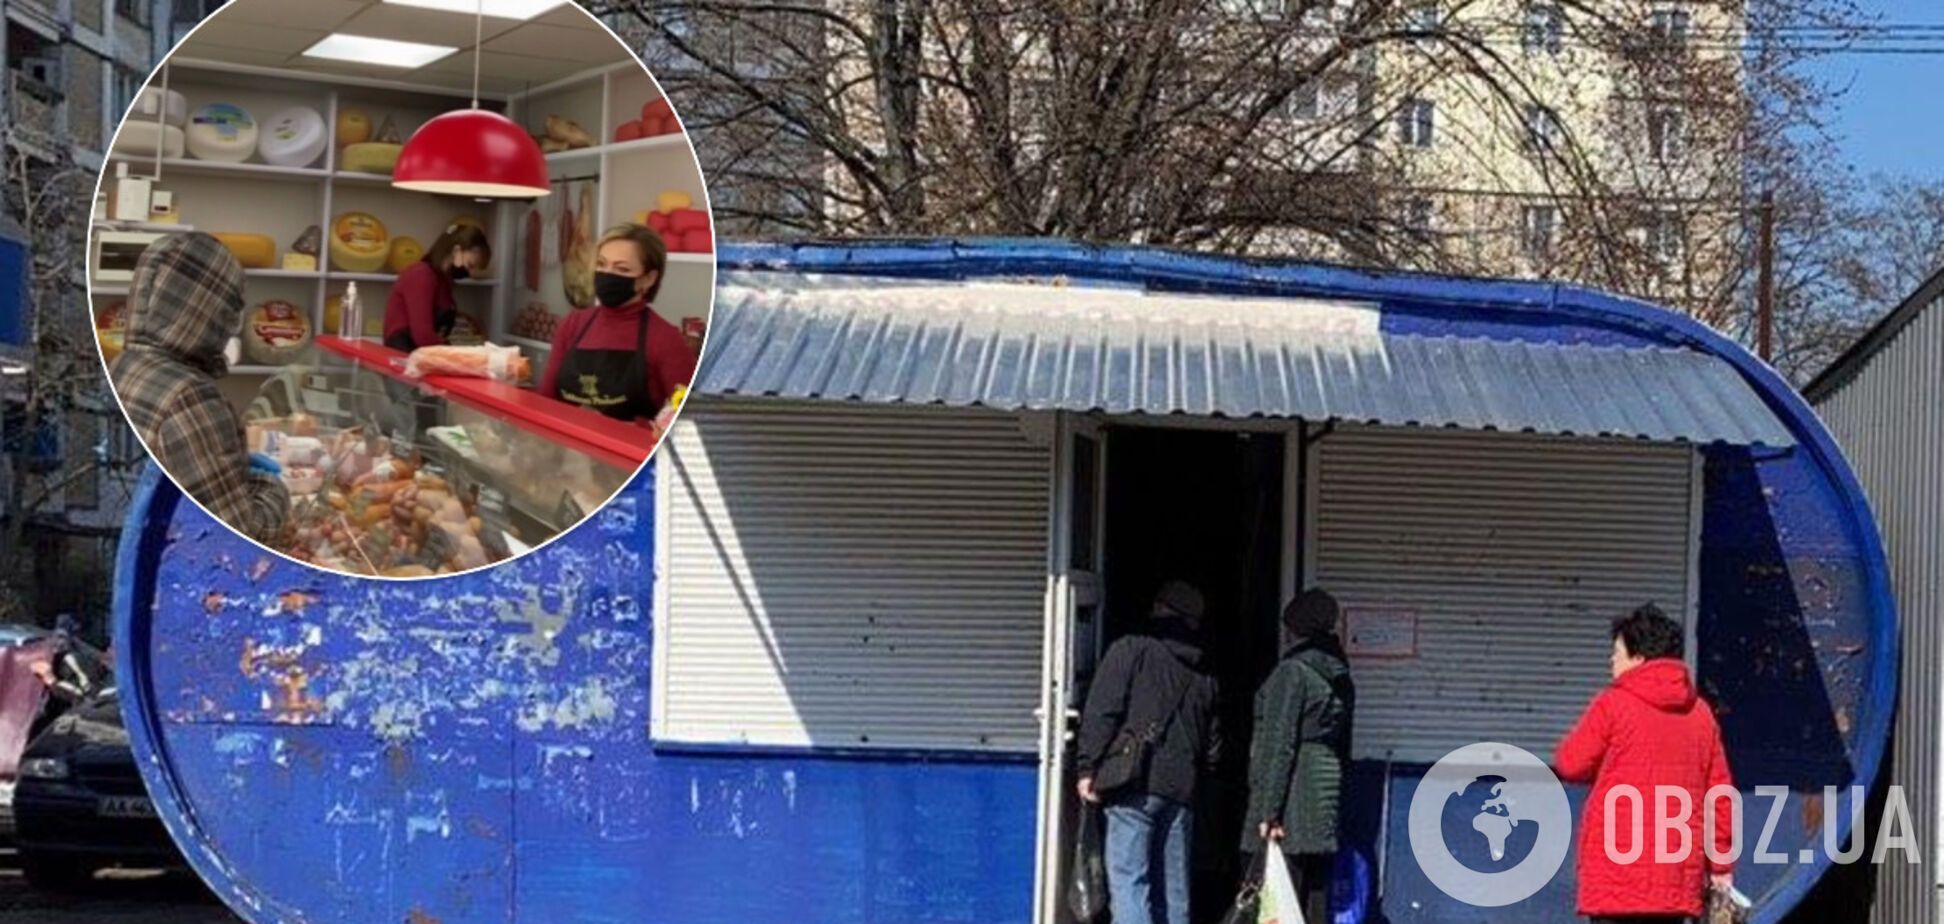 Без масок і по 7 осіб у магазині: як у Києві порушують карантин. Відео